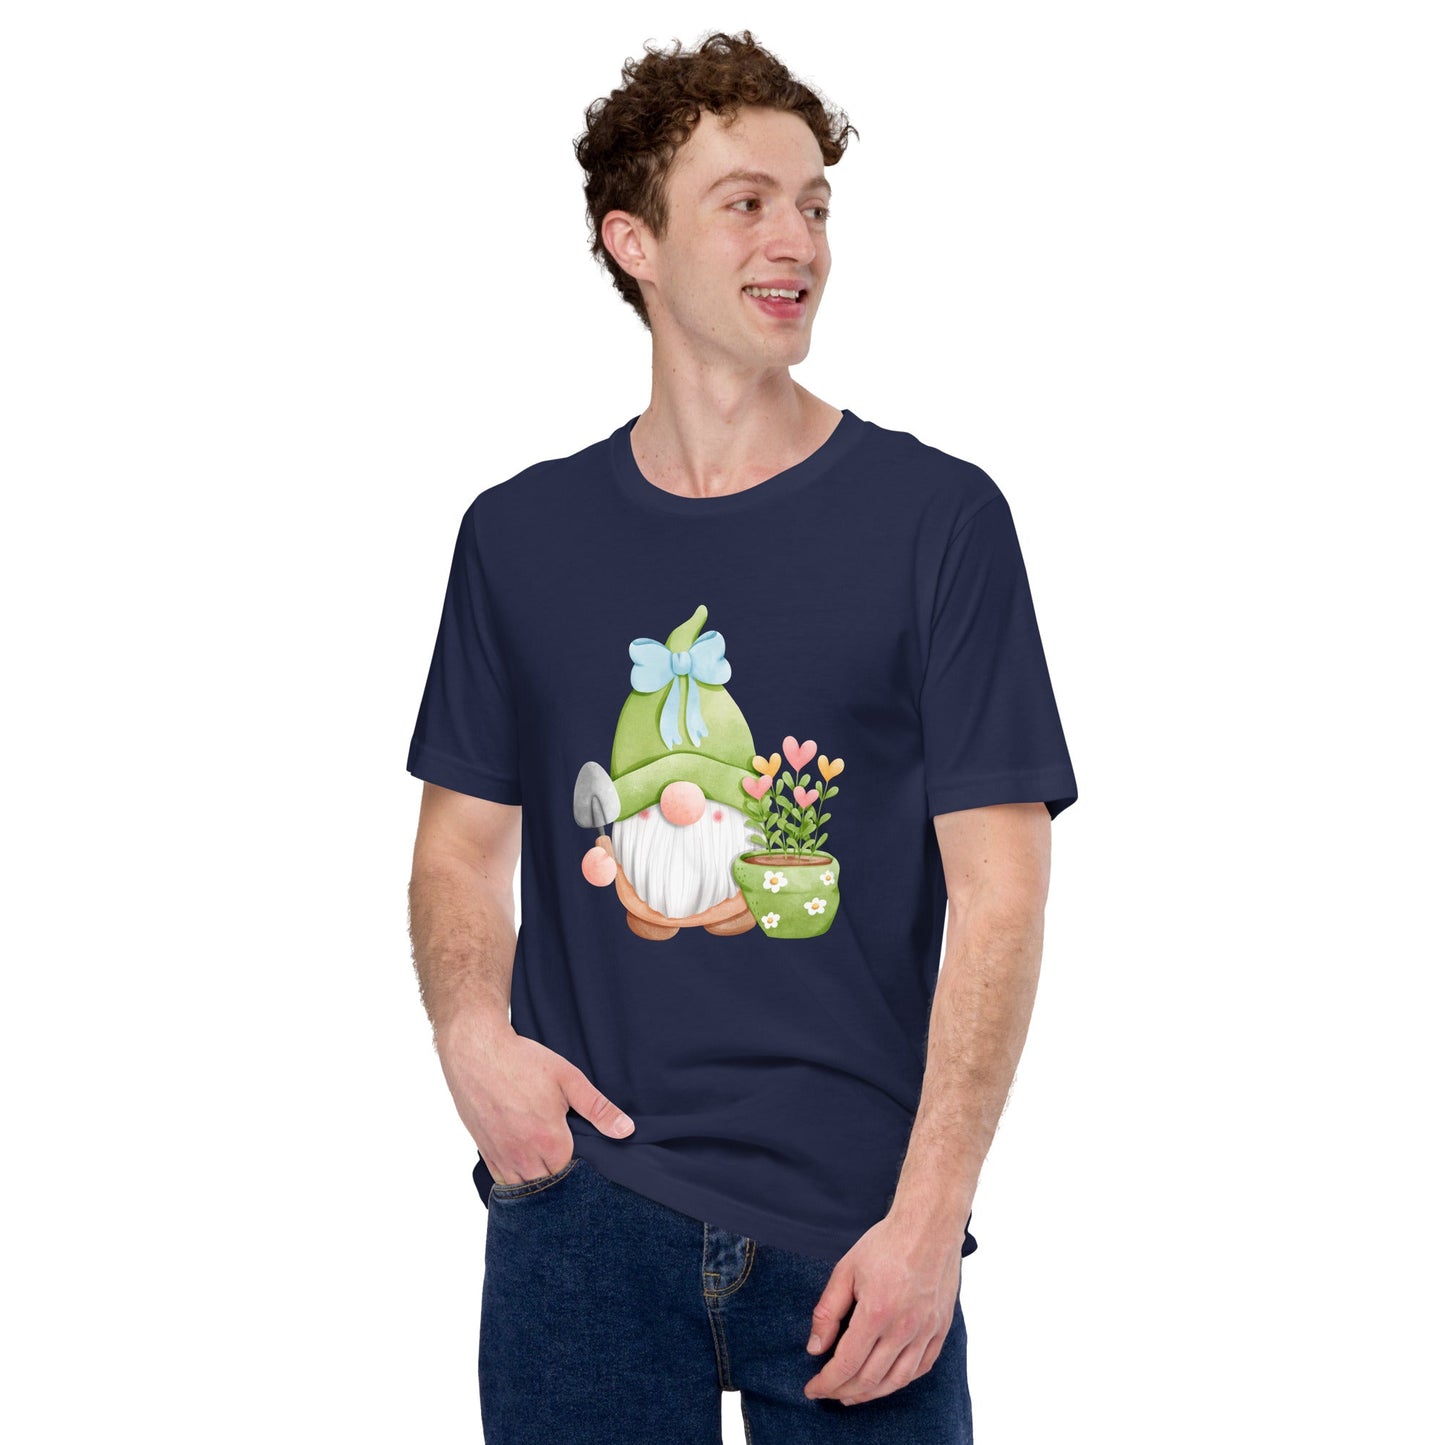 Spring Garden Gnome T - Shirt